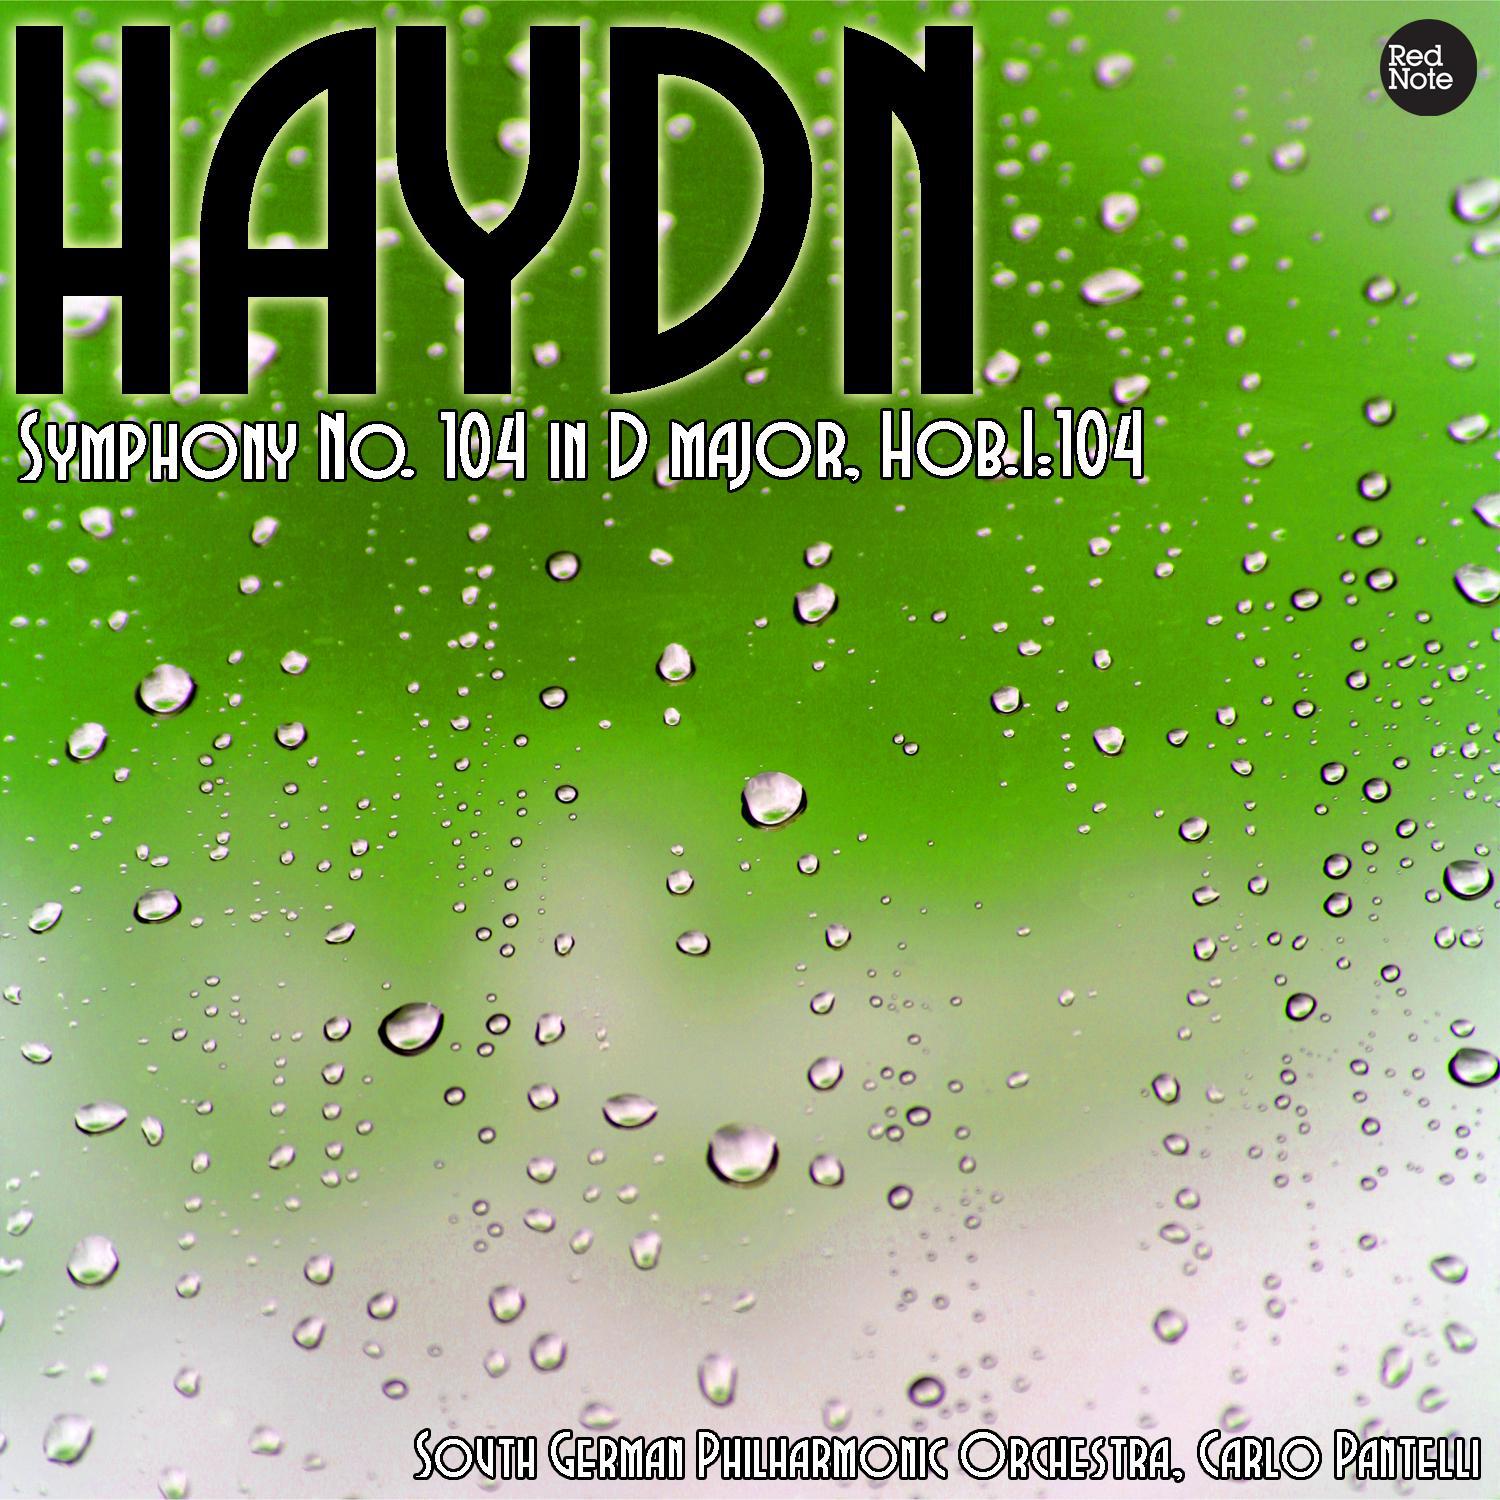 Haydn: Symphony No. 104 in D major, Hob.I:104